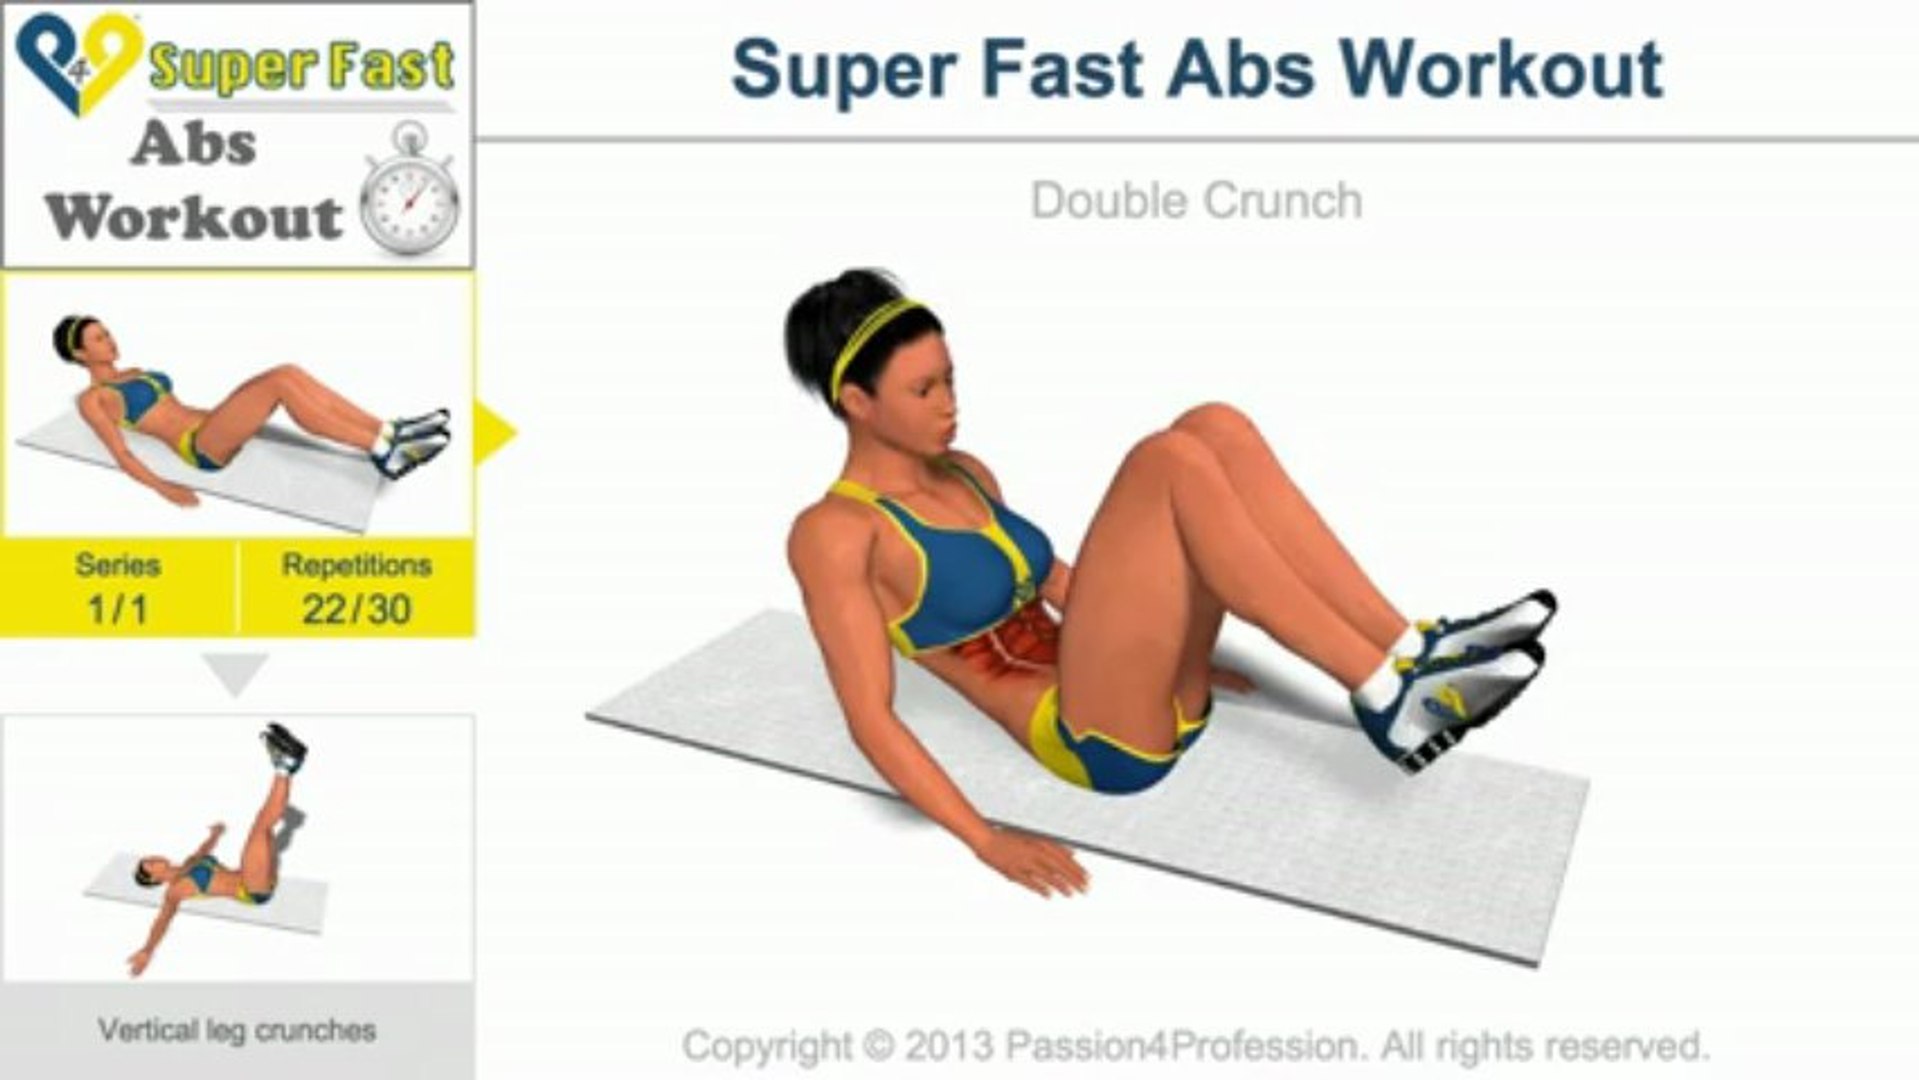 1 уровень пресса. P4p пресс 1 уровень. Vertical Leg Crunches упражнение. ABS Workout Level 1. P4p ABS Workout Level 1.